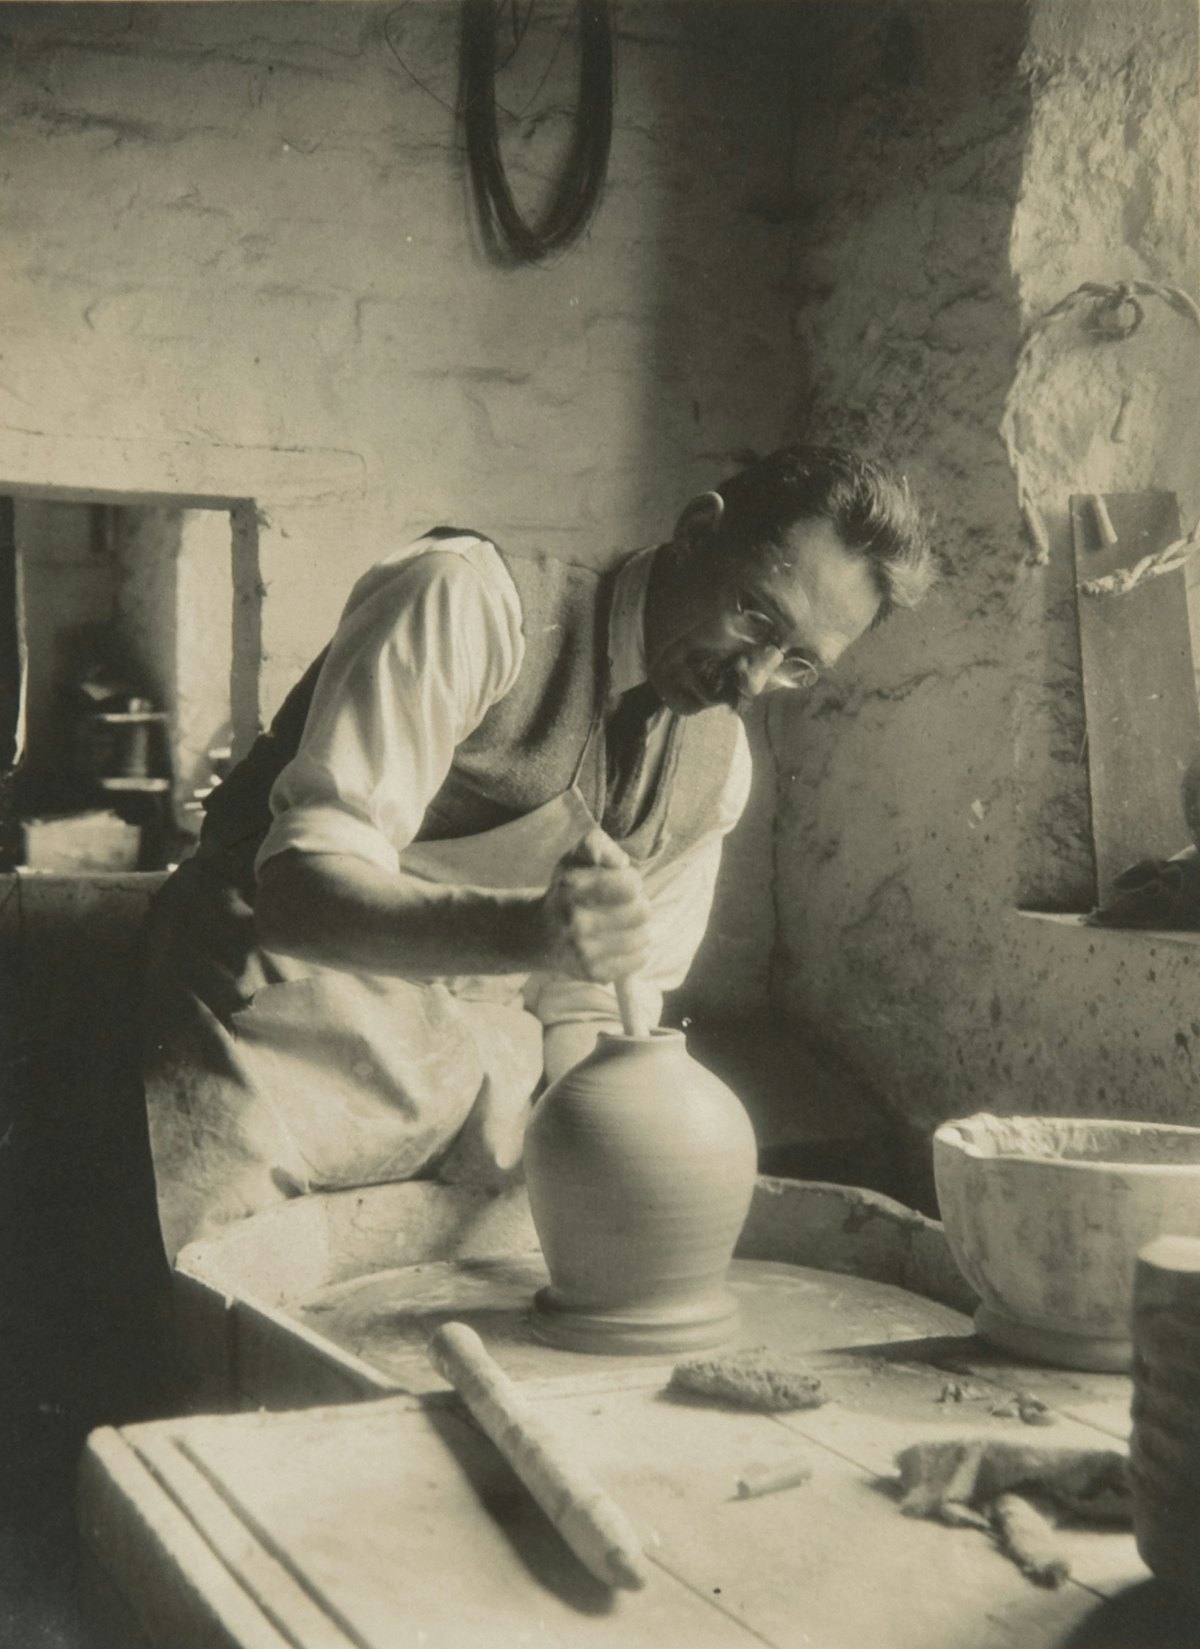 Bernard Leach trabajando en el torno en la década de 1930. Del archivo de Bernard Leach en el Centro de Estudios de Artesanía de la Universidad de las Artes Creativas, BHL/6690.